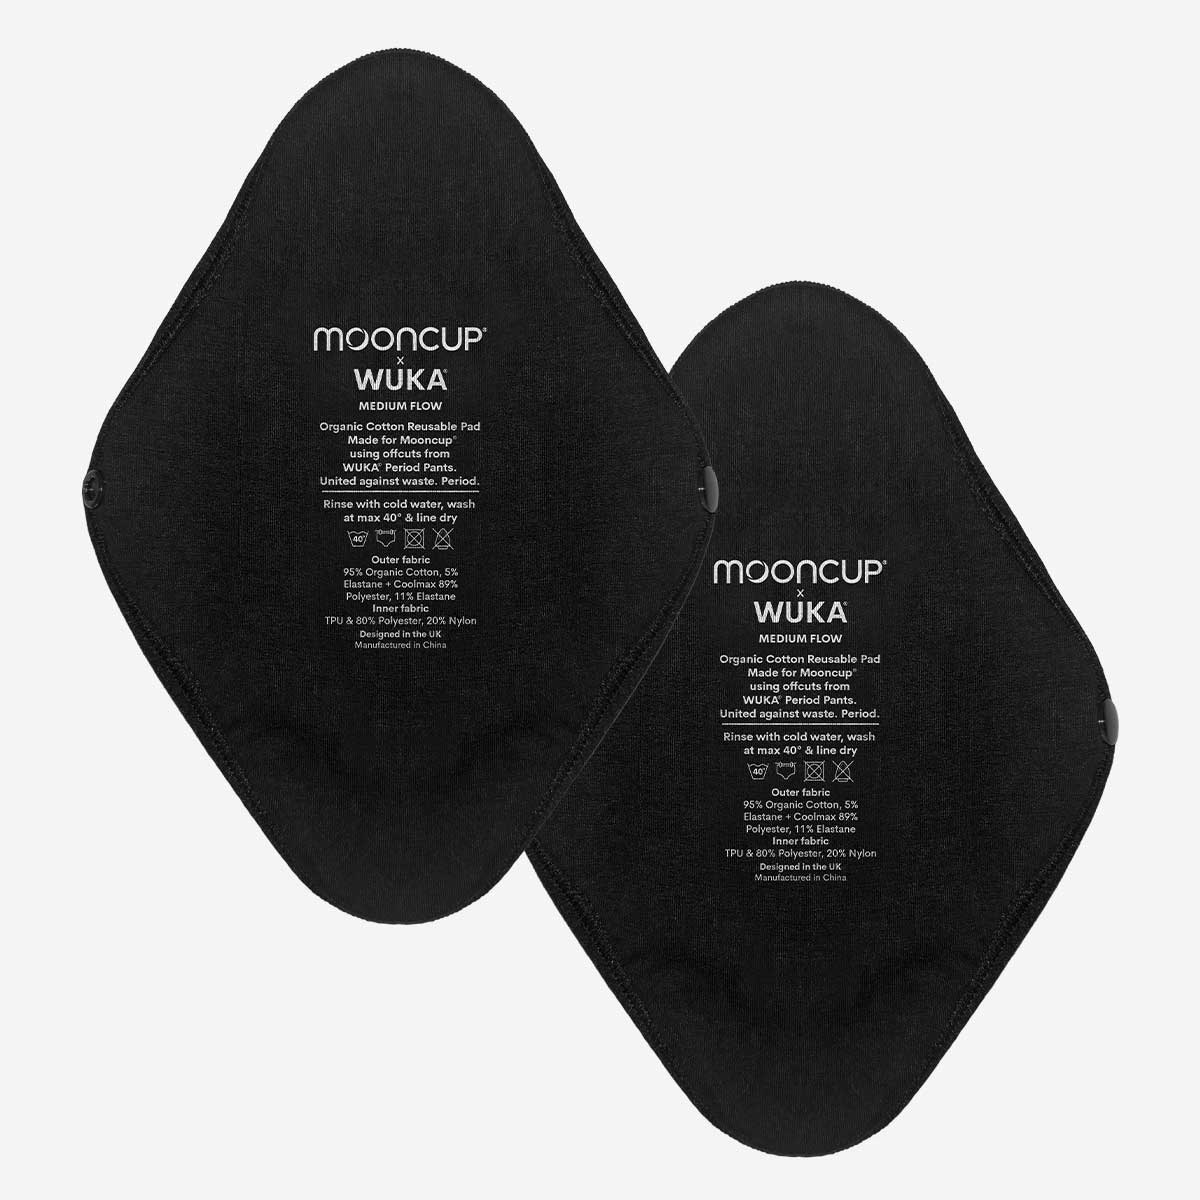 WUKA Reusable Period Pads 2 Pack Style Medium Flow Black Colour Set